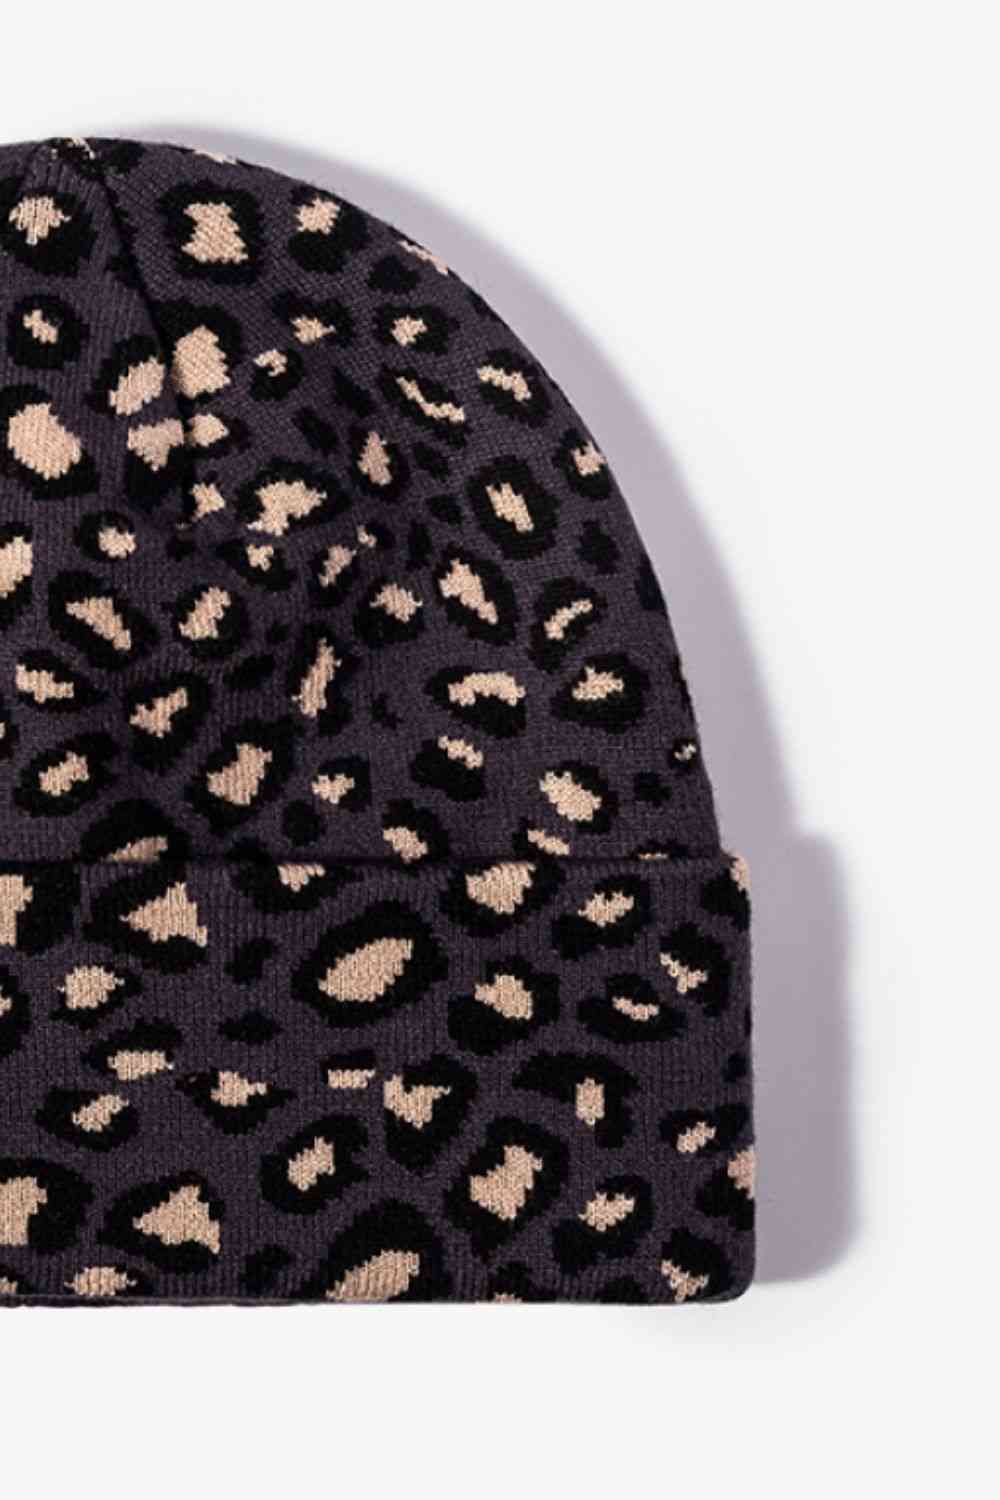 CHIC HATZ Leopard Pattern Hat Cuffed Beanie